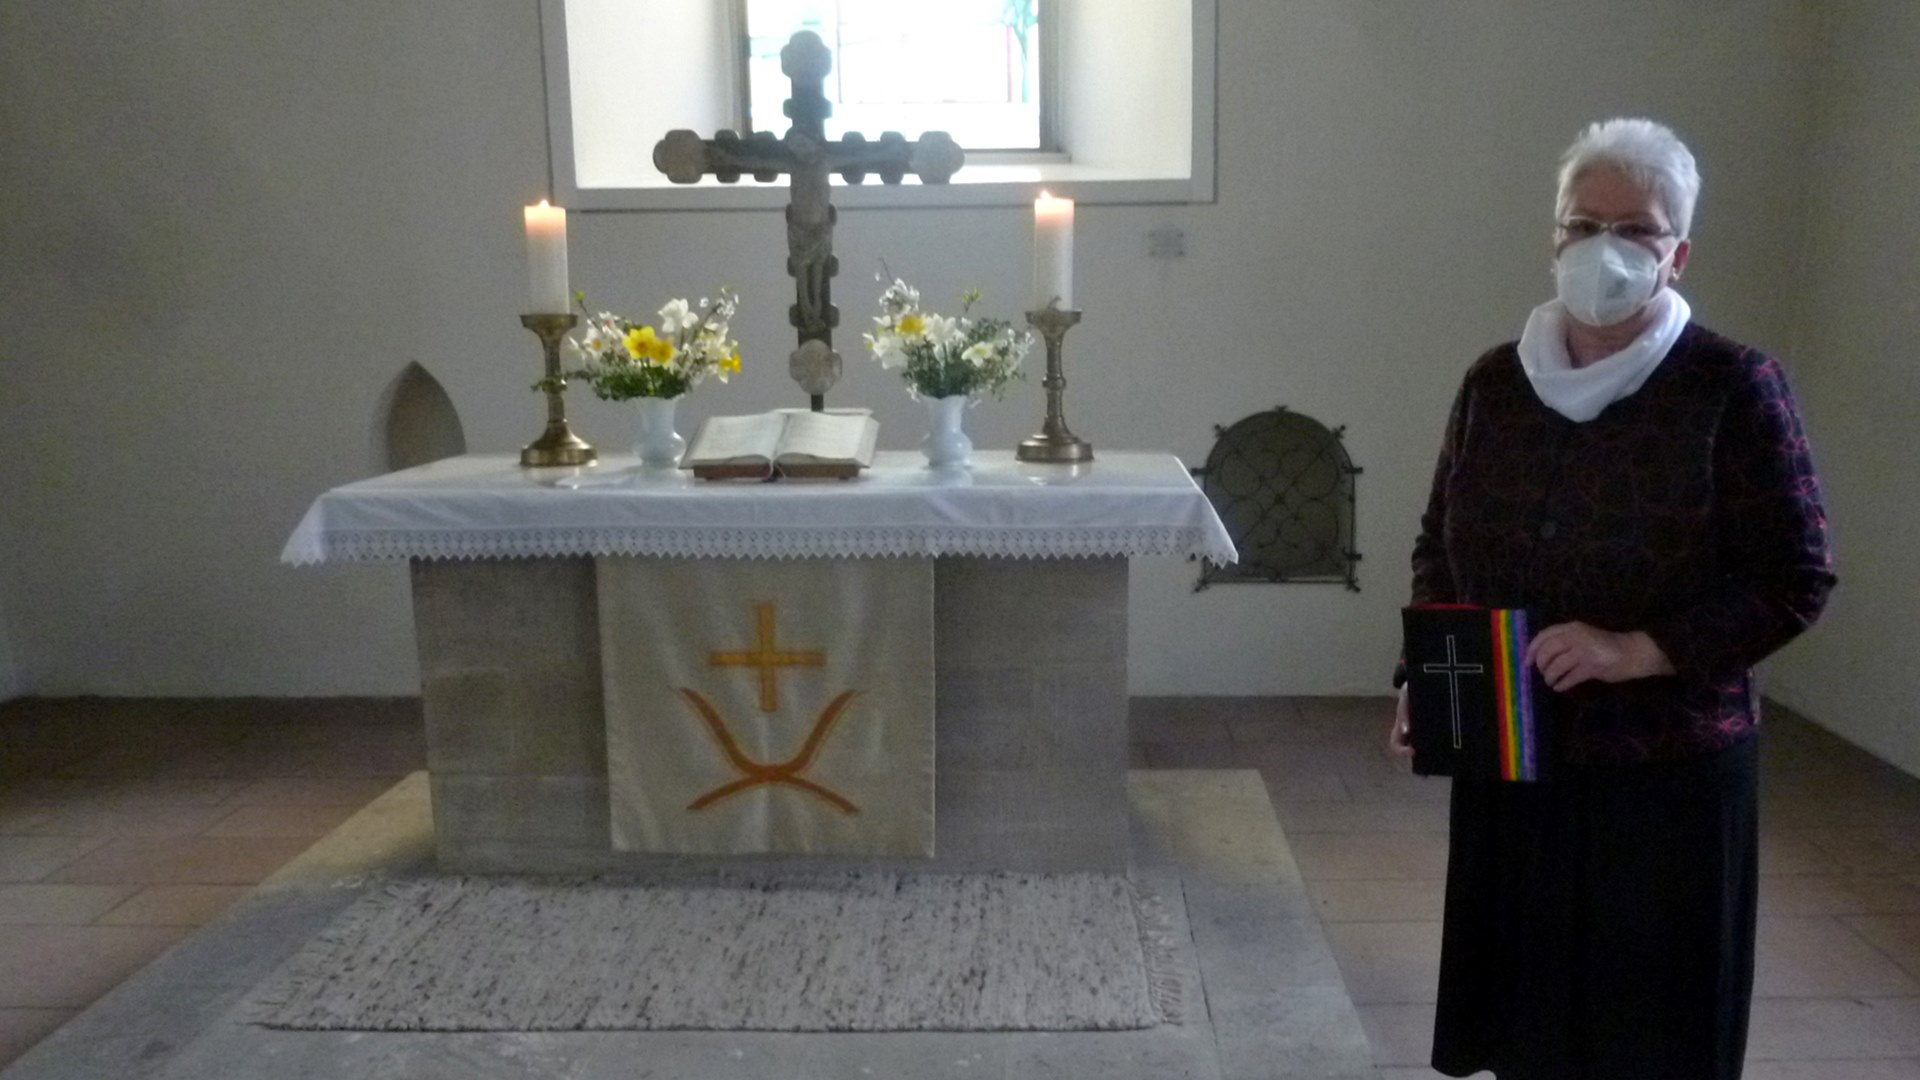 Vor einem Altar mit Blumensträußen, einem großen Kreuz, einem aufgeschlagenem Buch und zwei Kerzen steht eine Frau in einem dunklen Kleid und einer Mund-Nase-Maske.